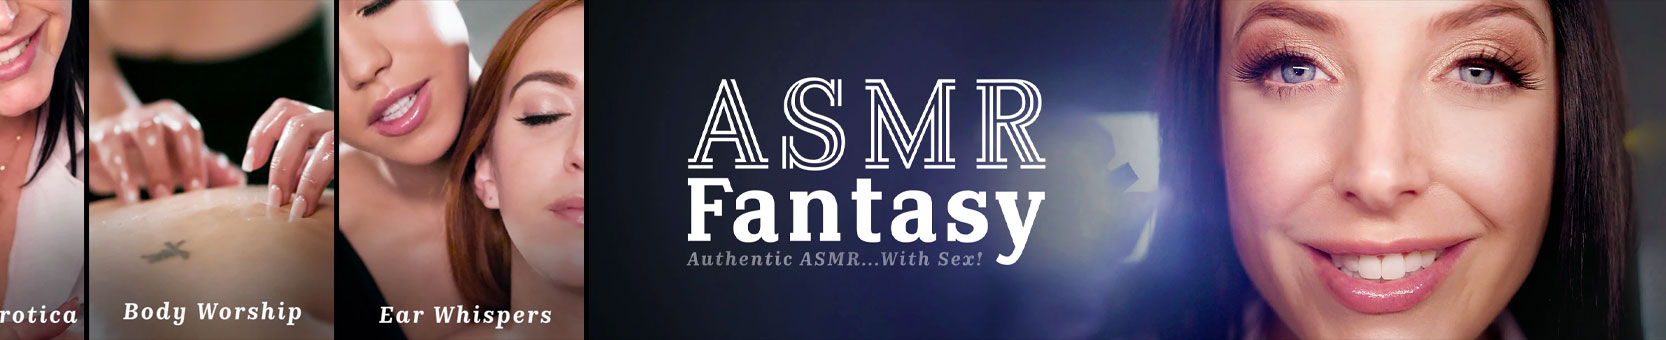 ASMR Fantasy bedava videolar